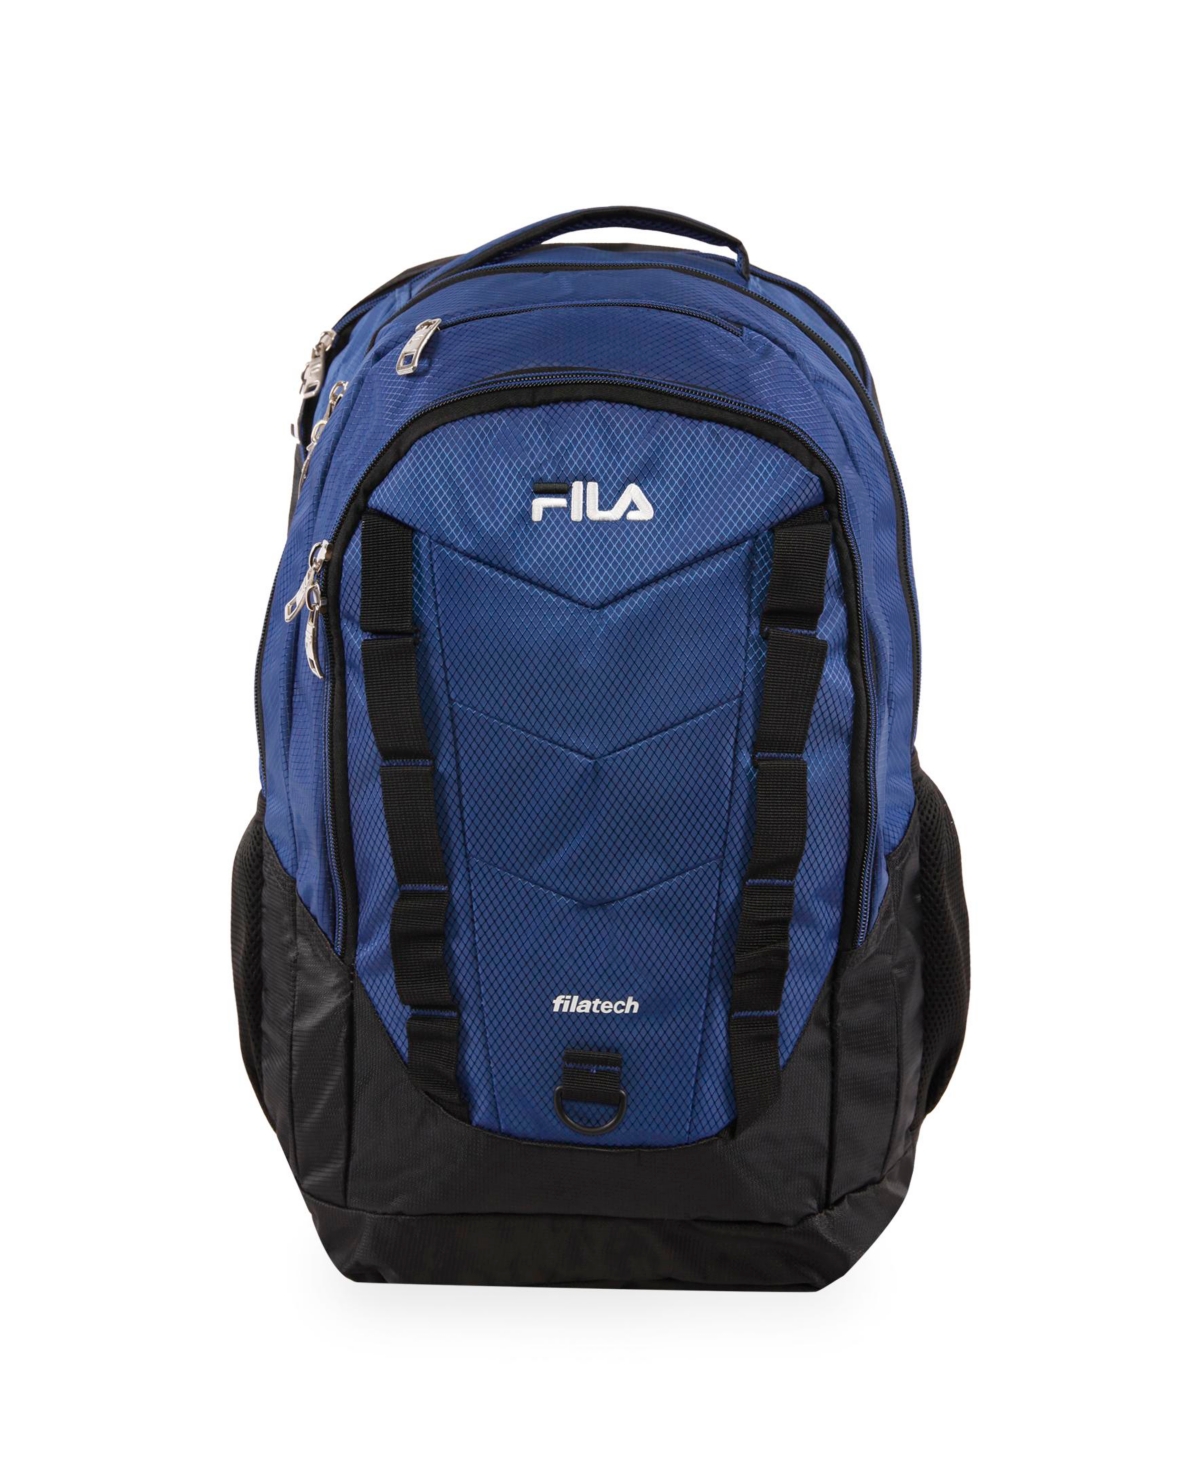 Fila Deacon 6 Xxl Backpack In Blue